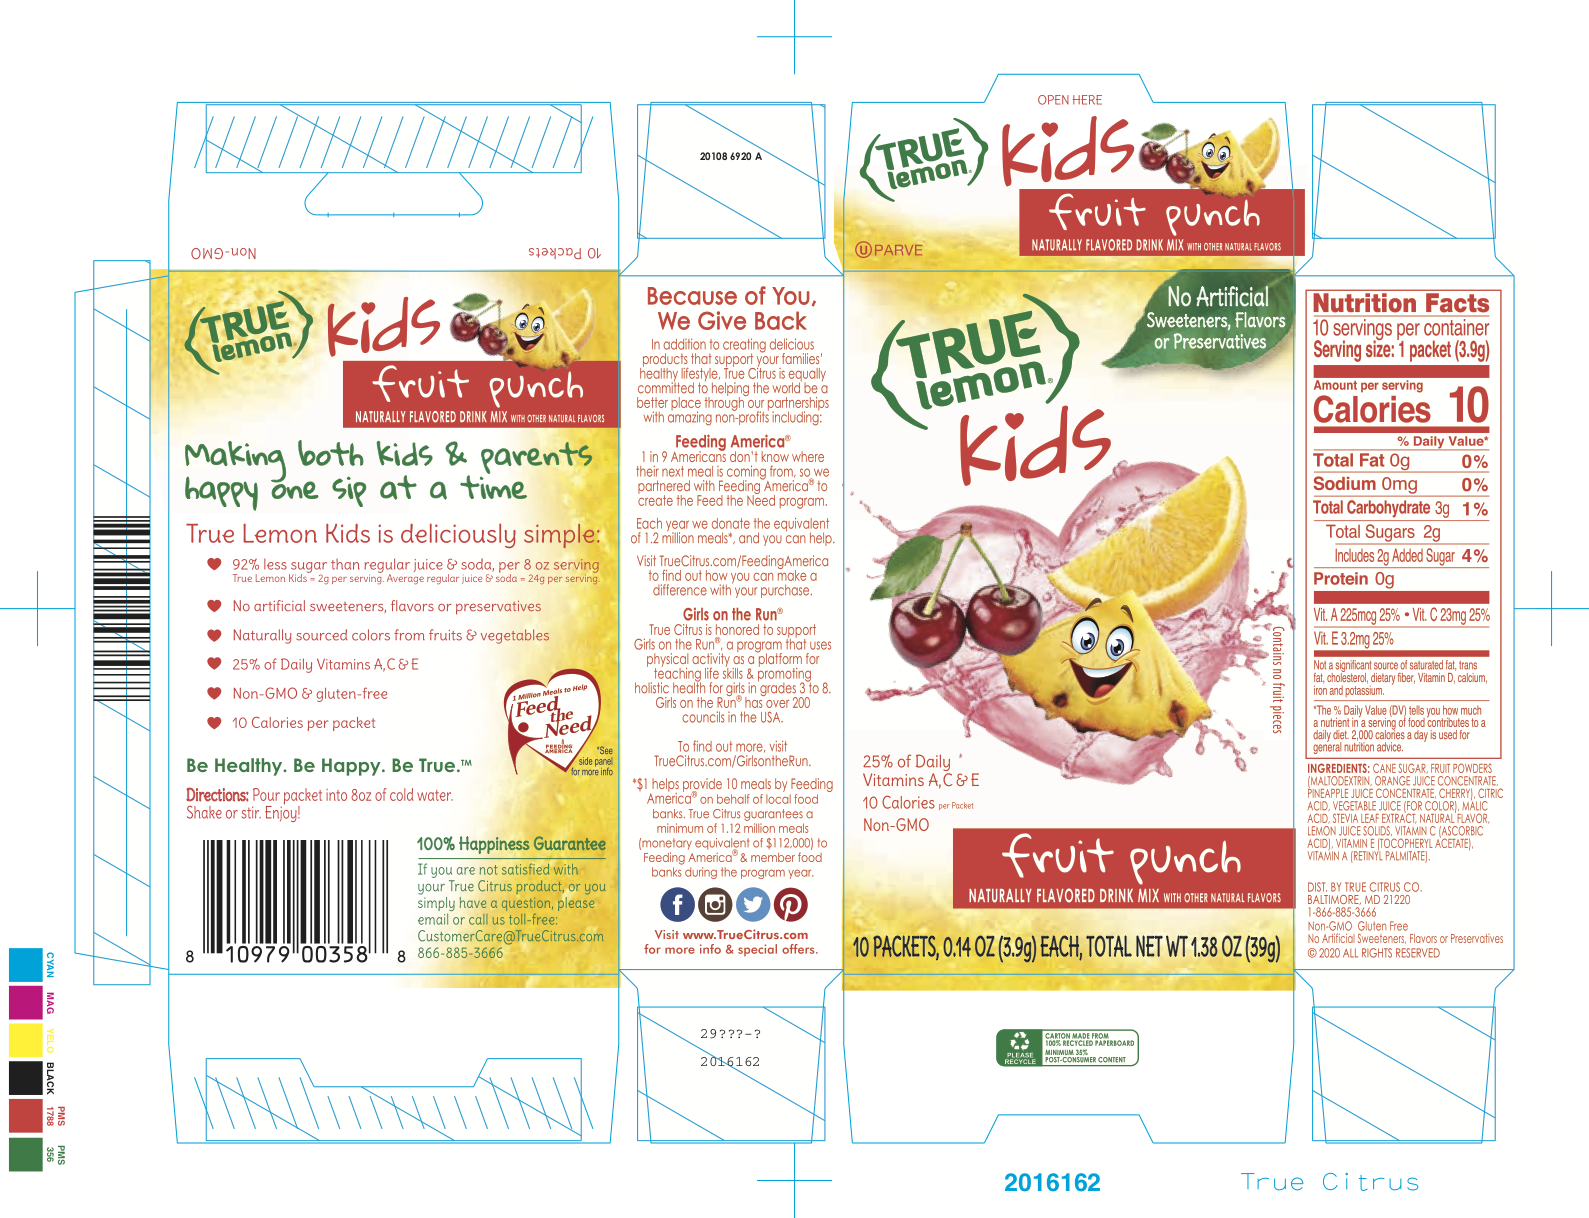 True Lemon Kids Fruit Punch 12 units per case 1.4 oz Product Label